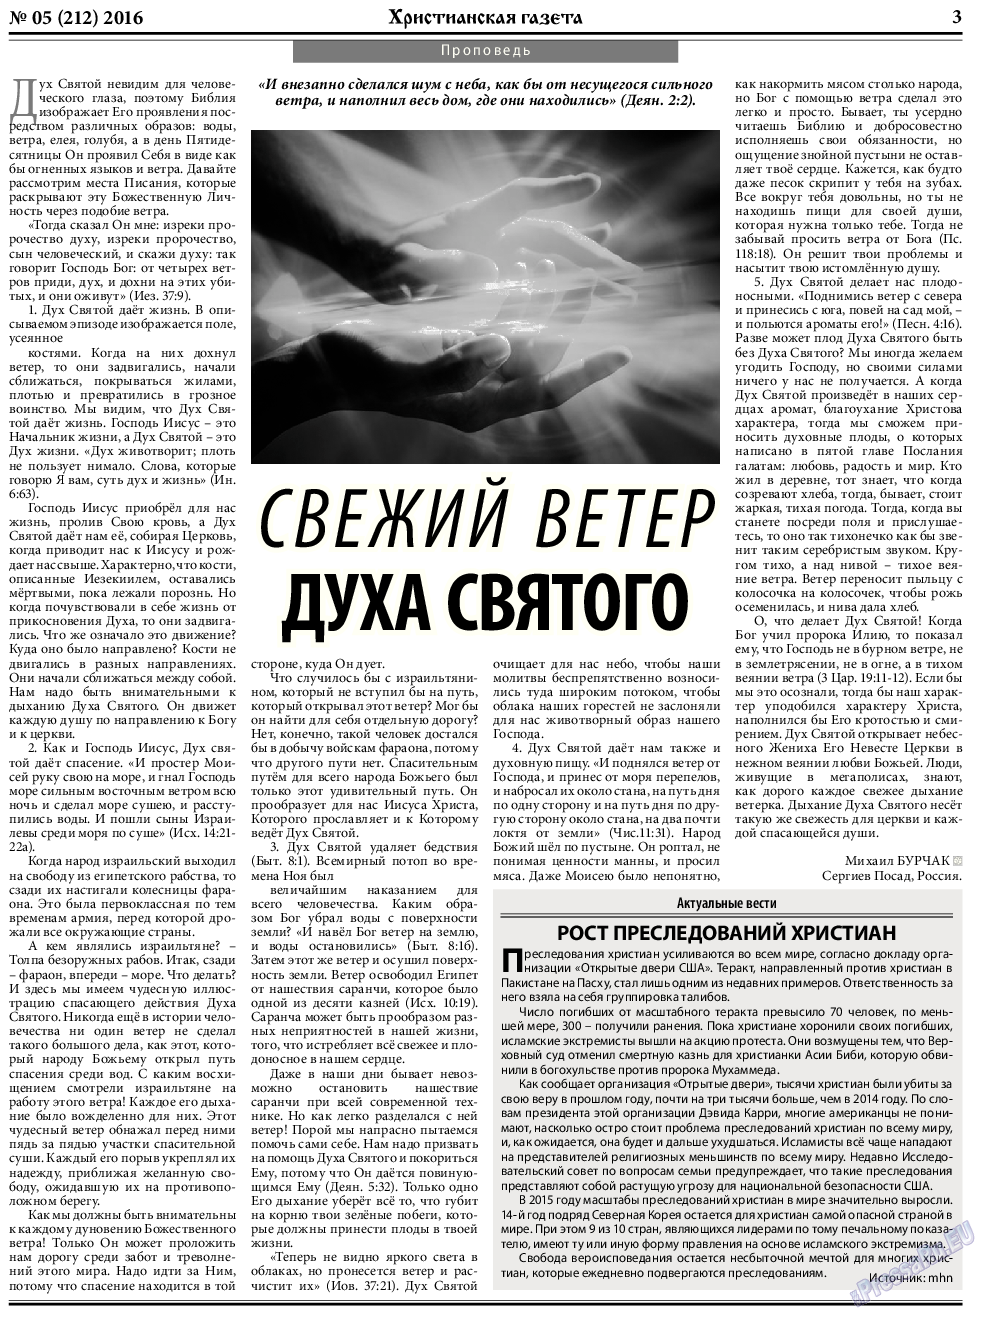 Христианская газета, газета. 2016 №5 стр.3